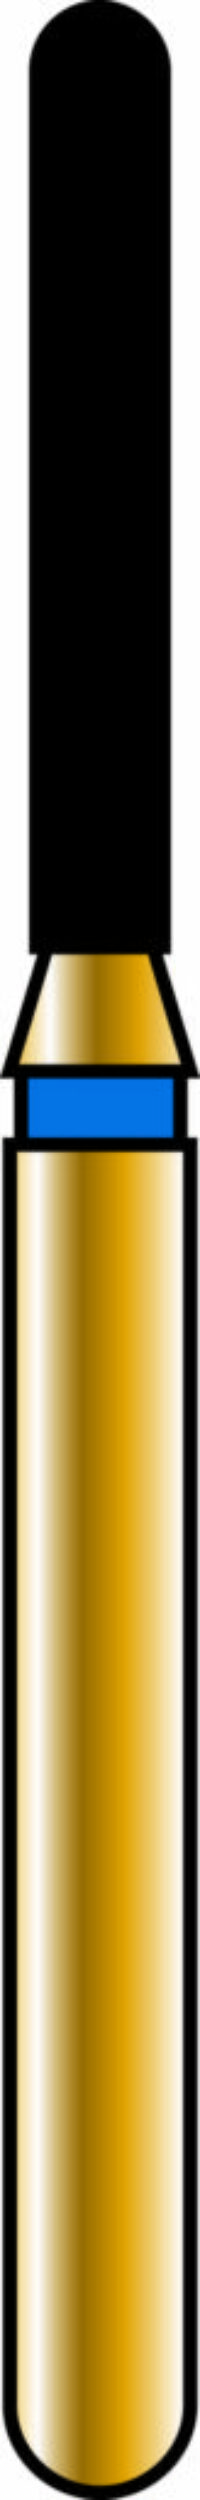 Round End Cylinder 12-8mm Gold Diamond Bur